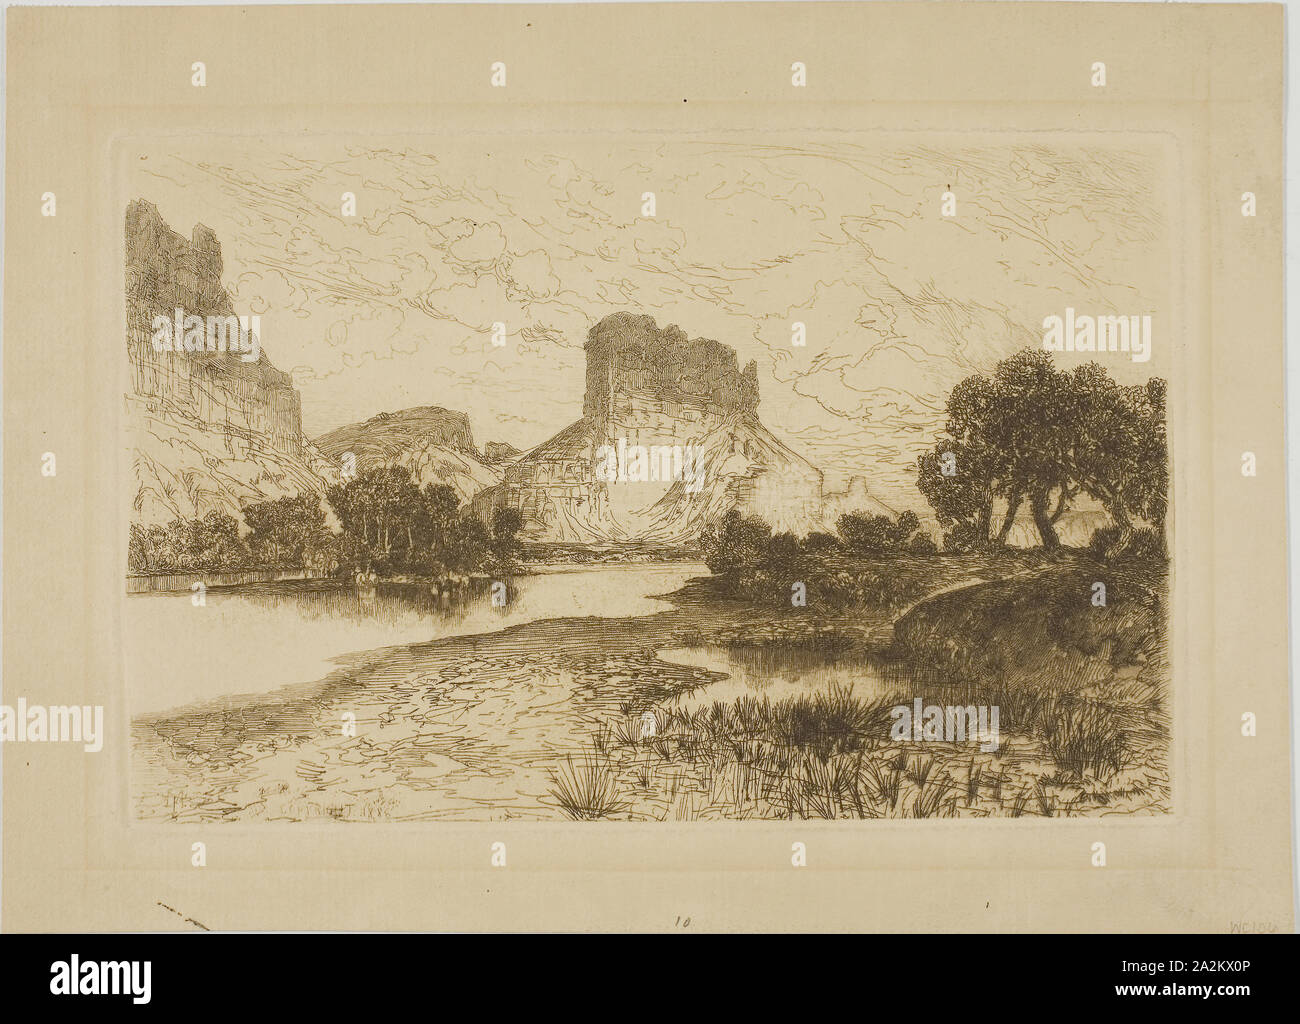 Green River, Territorio del Wyoming, 1886, Thomas Moran, americano, nato in Inghilterra, 1837-1926, Stati Uniti, incisione su tan carta intessuta, 134 x 204 mm (piastra), 178 x 246 mm (foglio Foto Stock